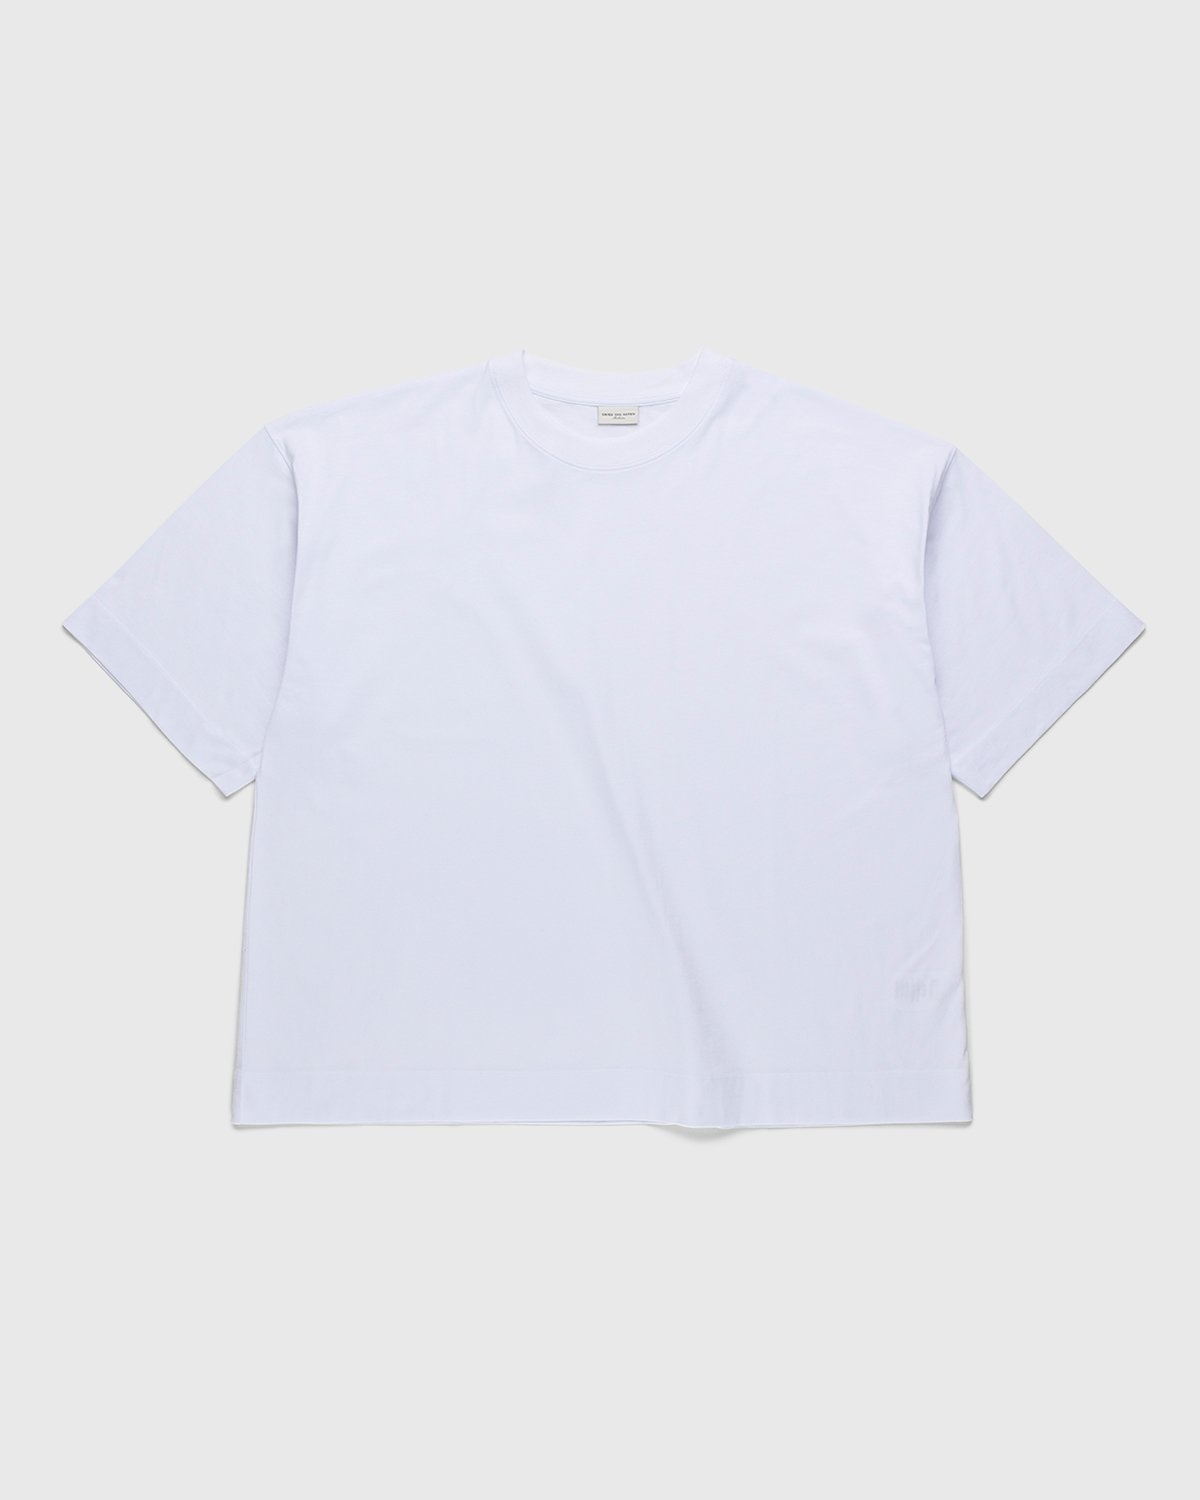 Dries van Noten – Hen Oversized T-Shirt White - T-Shirts - White - Image 2